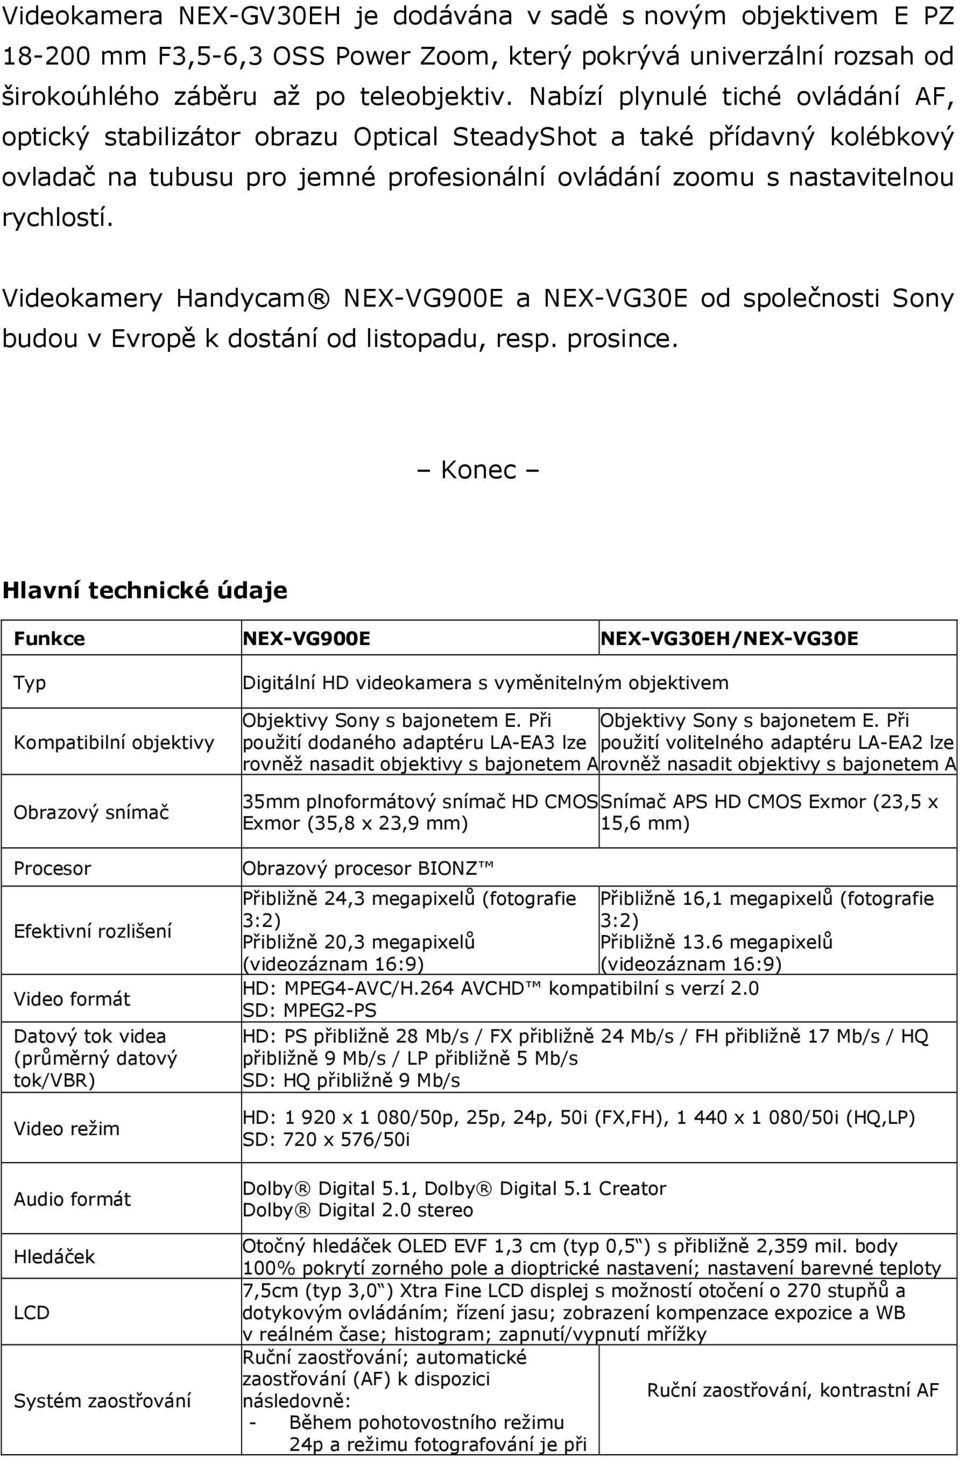 Videokamery Handycam NEX-VG900E a NEX-VG30E od společnosti Sony budou v Evropě k dostání od listopadu, resp. prosince.